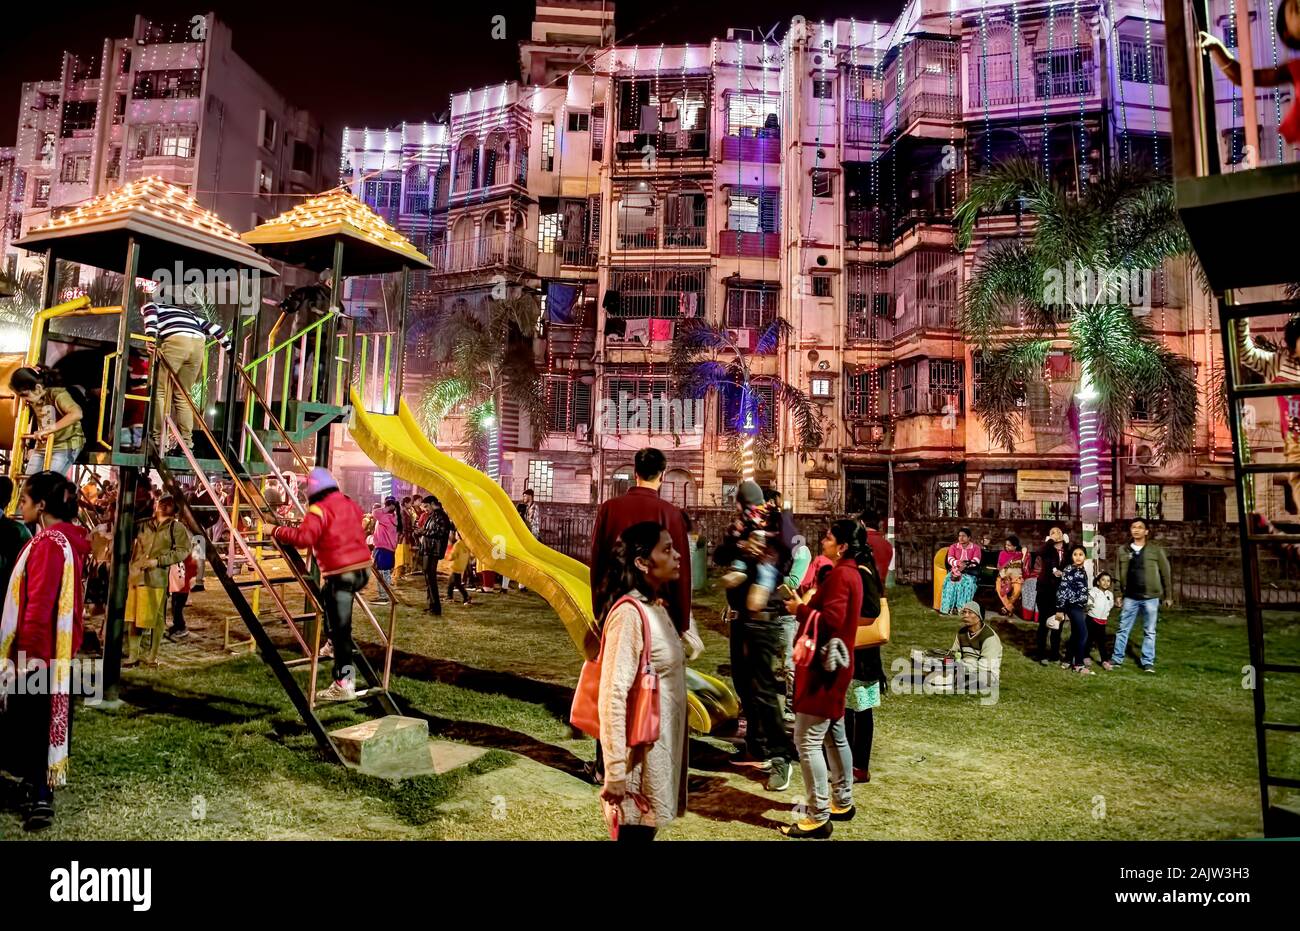 -La víspera de Navidad,Sribhumi,parque infantil,encendido,jugar,General,de,Chistmas,festival,2019 ,Kolkata, India, Foto de stock